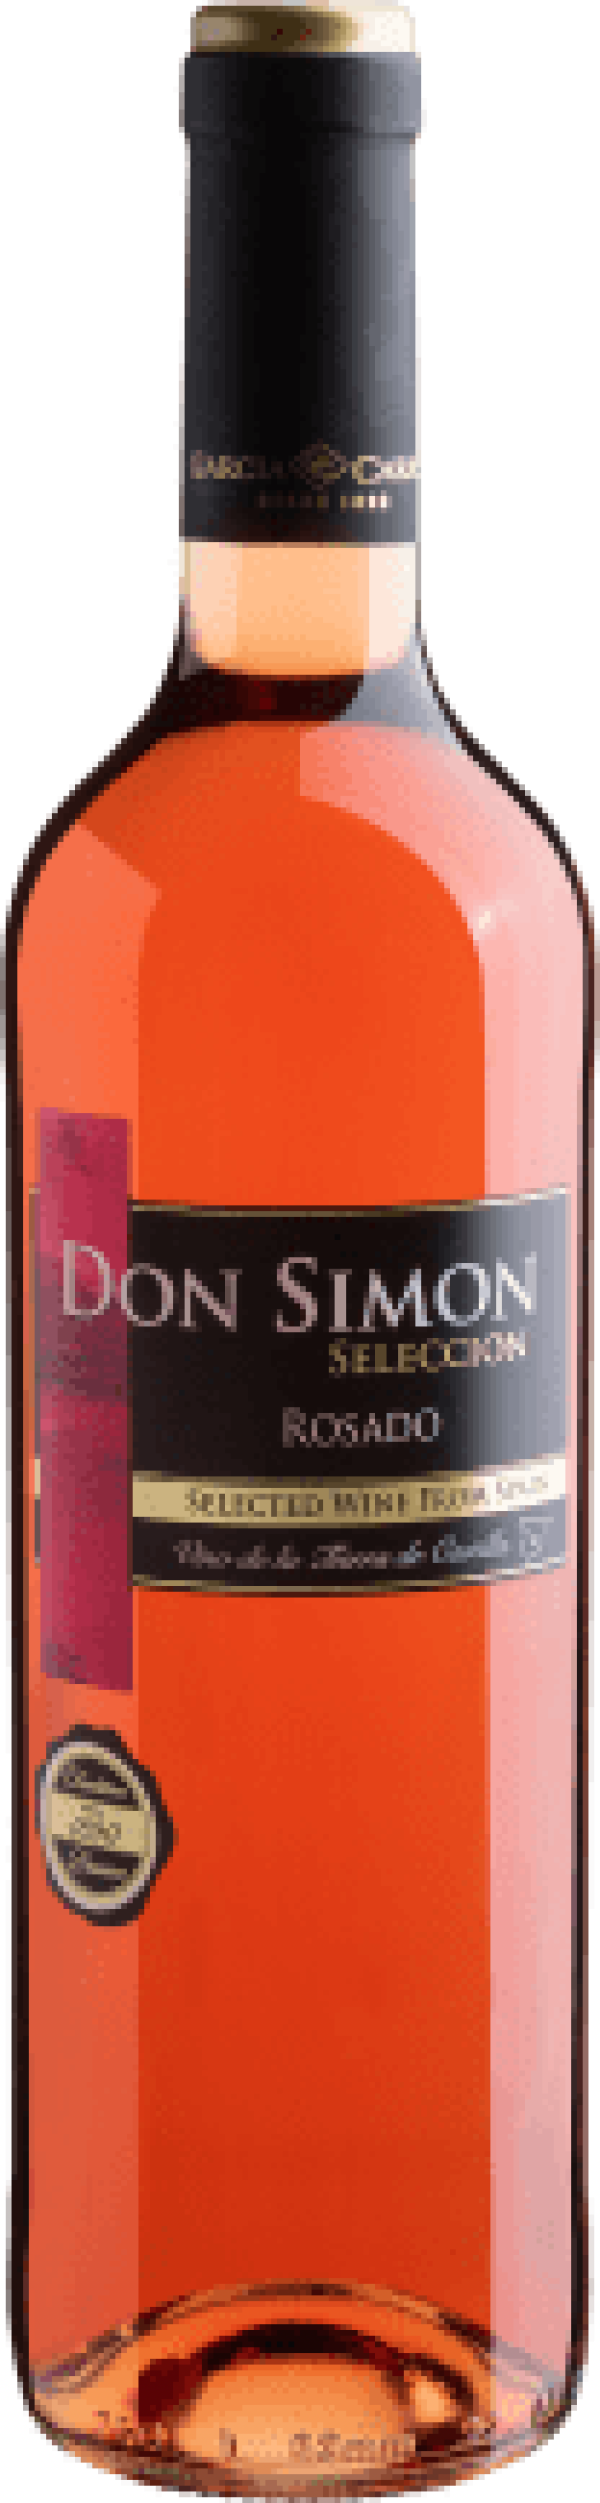 Don Simon Seleccion Rosado